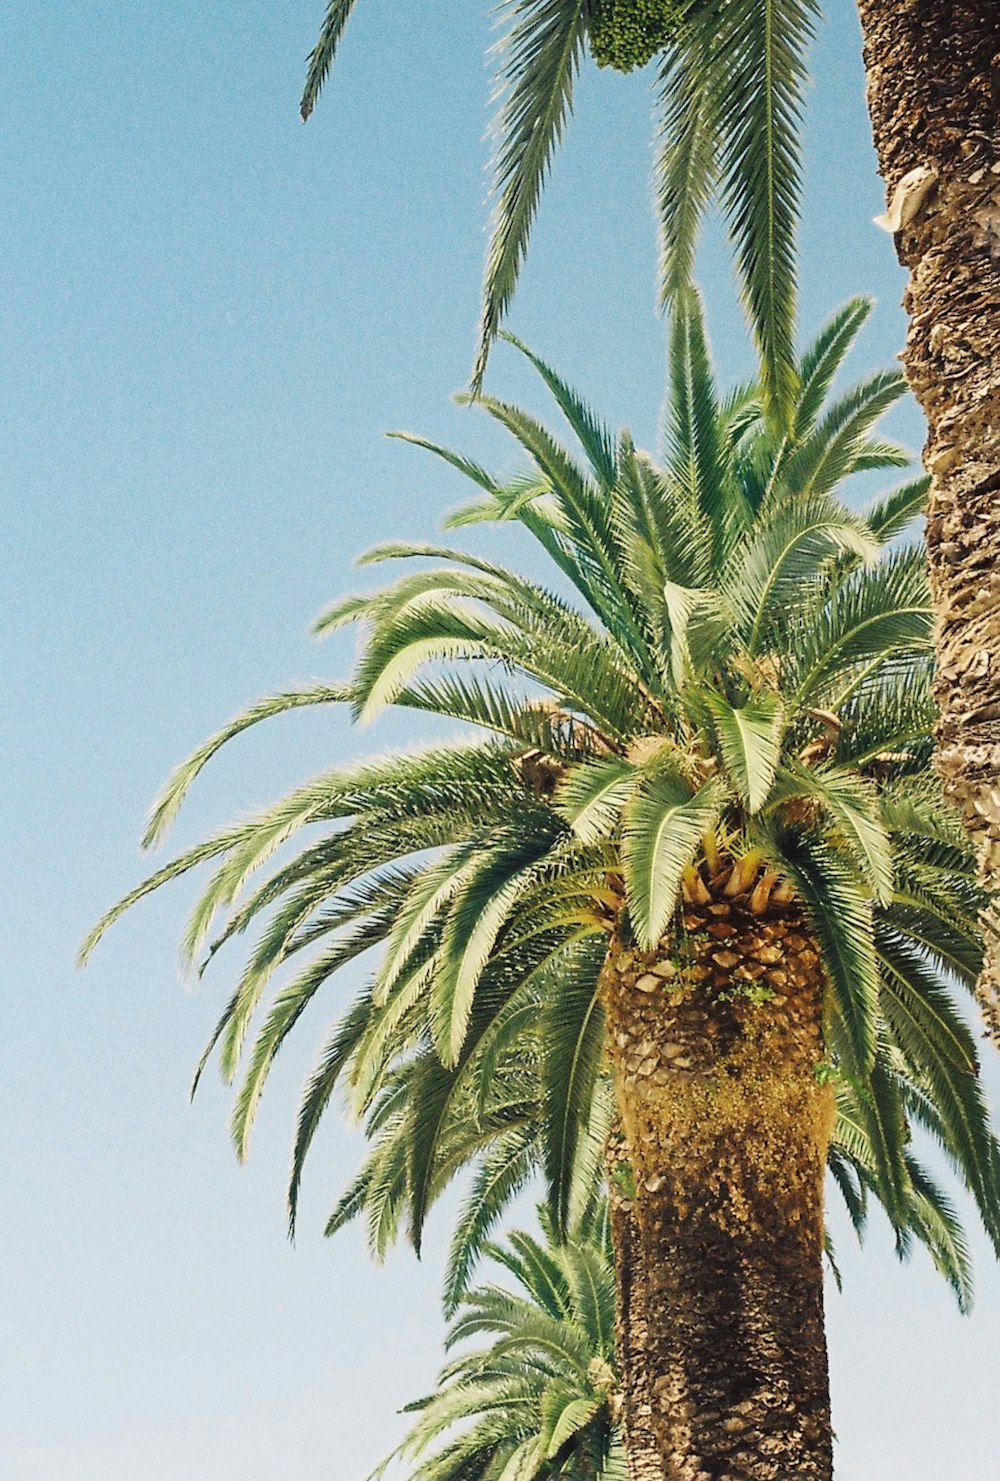 a palm tree with a blue sky